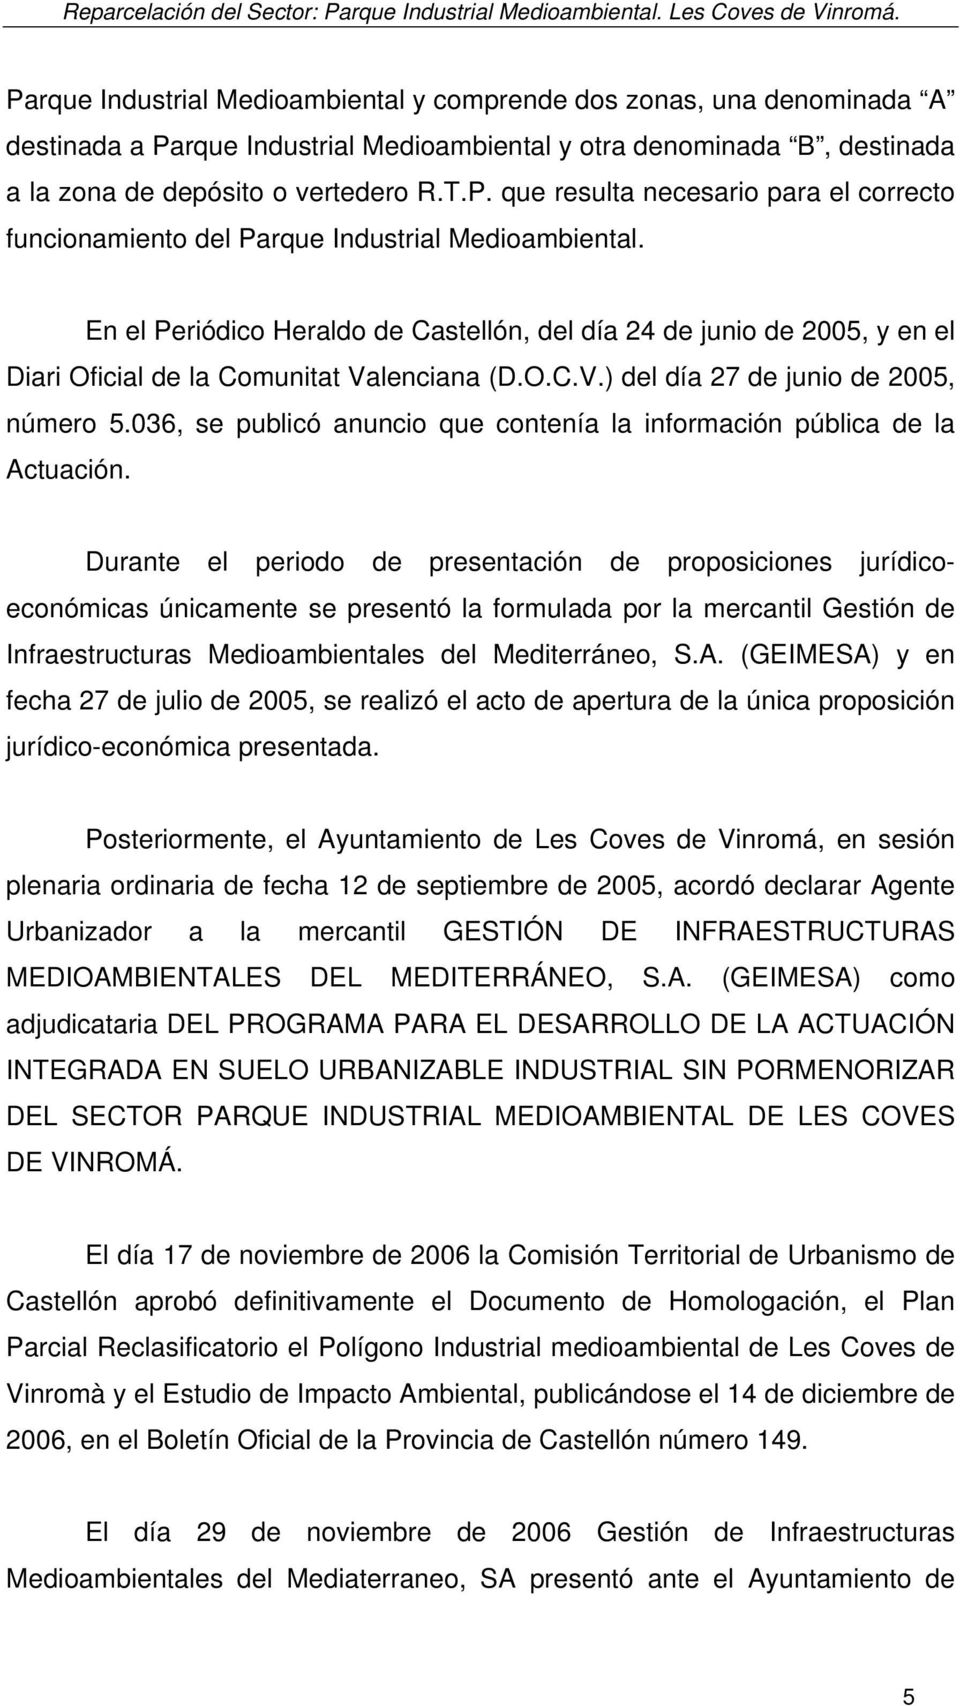 En el Periódico Heraldo de Castellón, del día 24 de junio de 2005, y en el Diari Oficial de la Comunitat Valenciana (D.O.C.V.) del día 27 de junio de 2005, número 5.